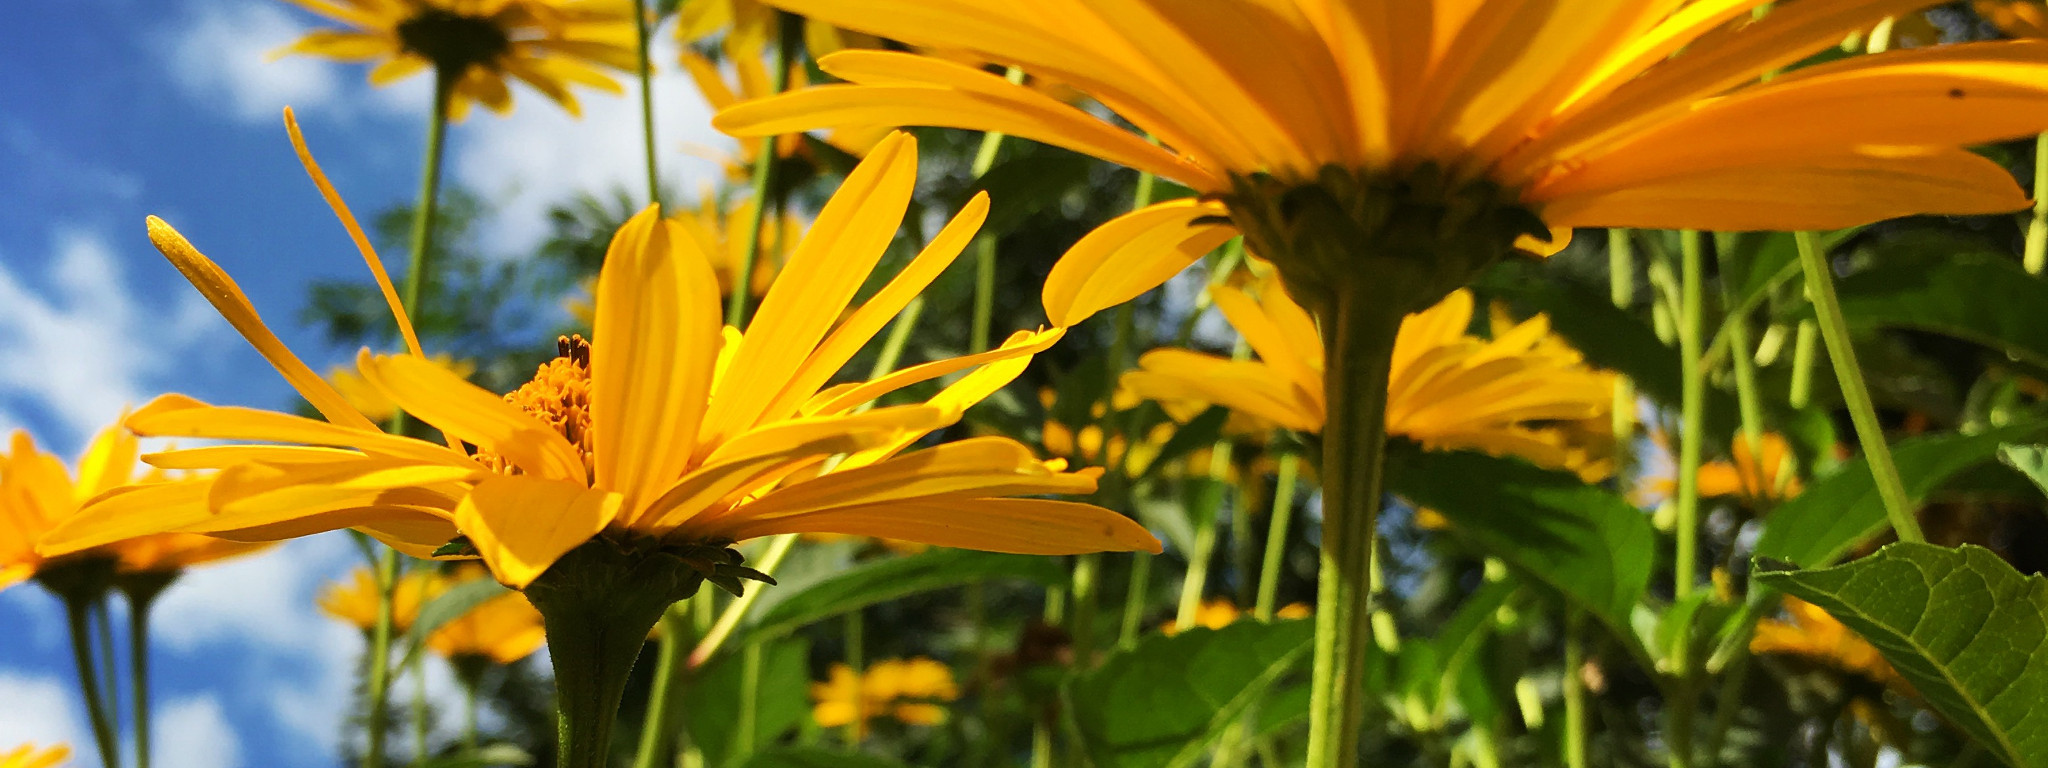 Żółte kwiatki pokazane w żabiej perspektywie z widokiem za niebieskie niebo.